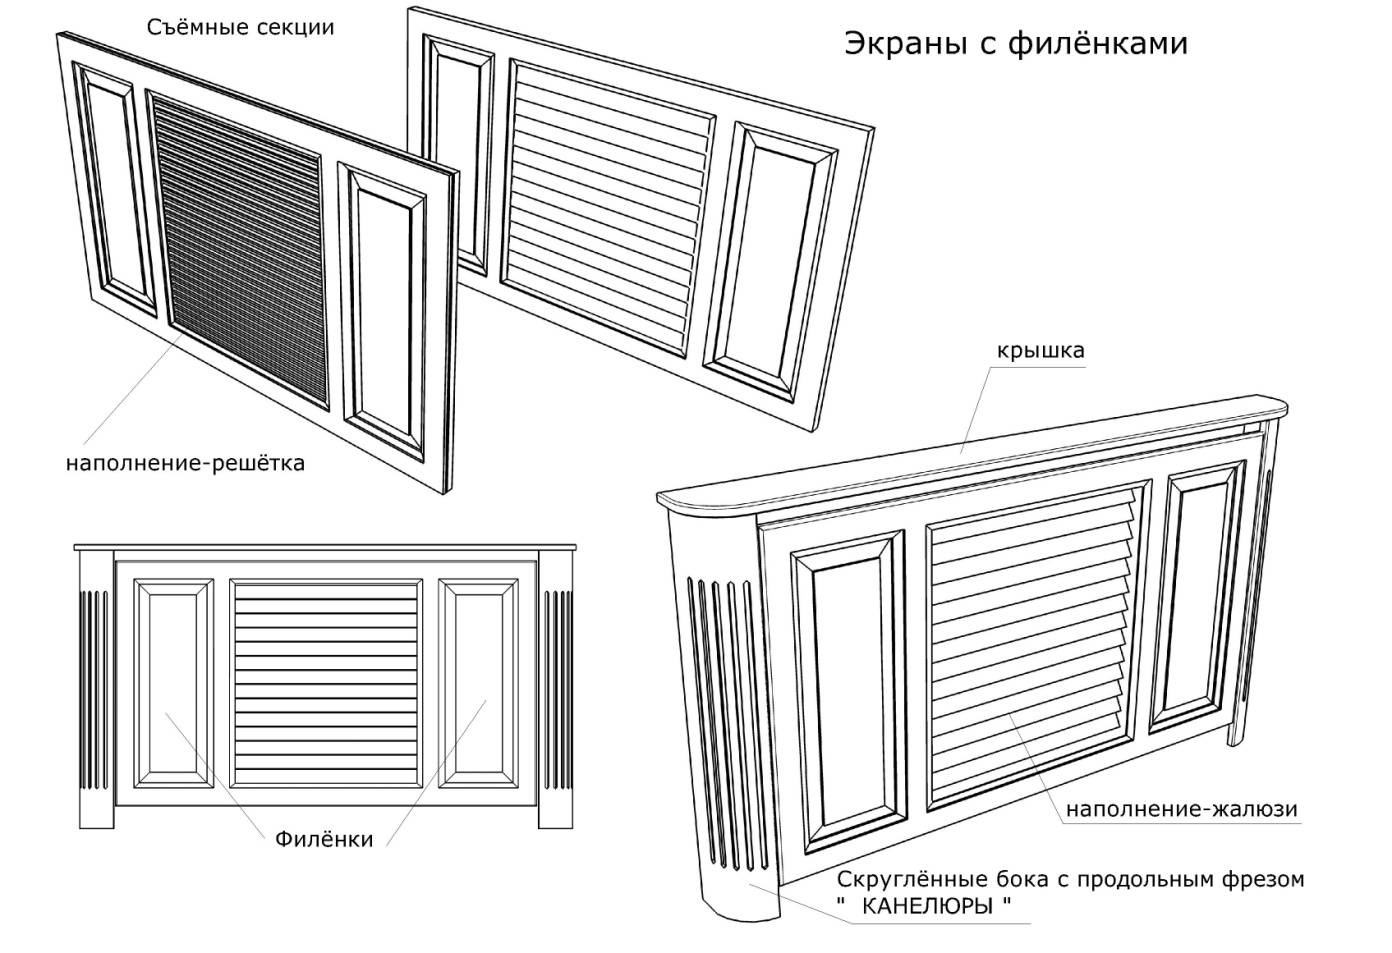 Декоративные экраны и решетки для батарей отопления — 5 различных видов и их сравнение